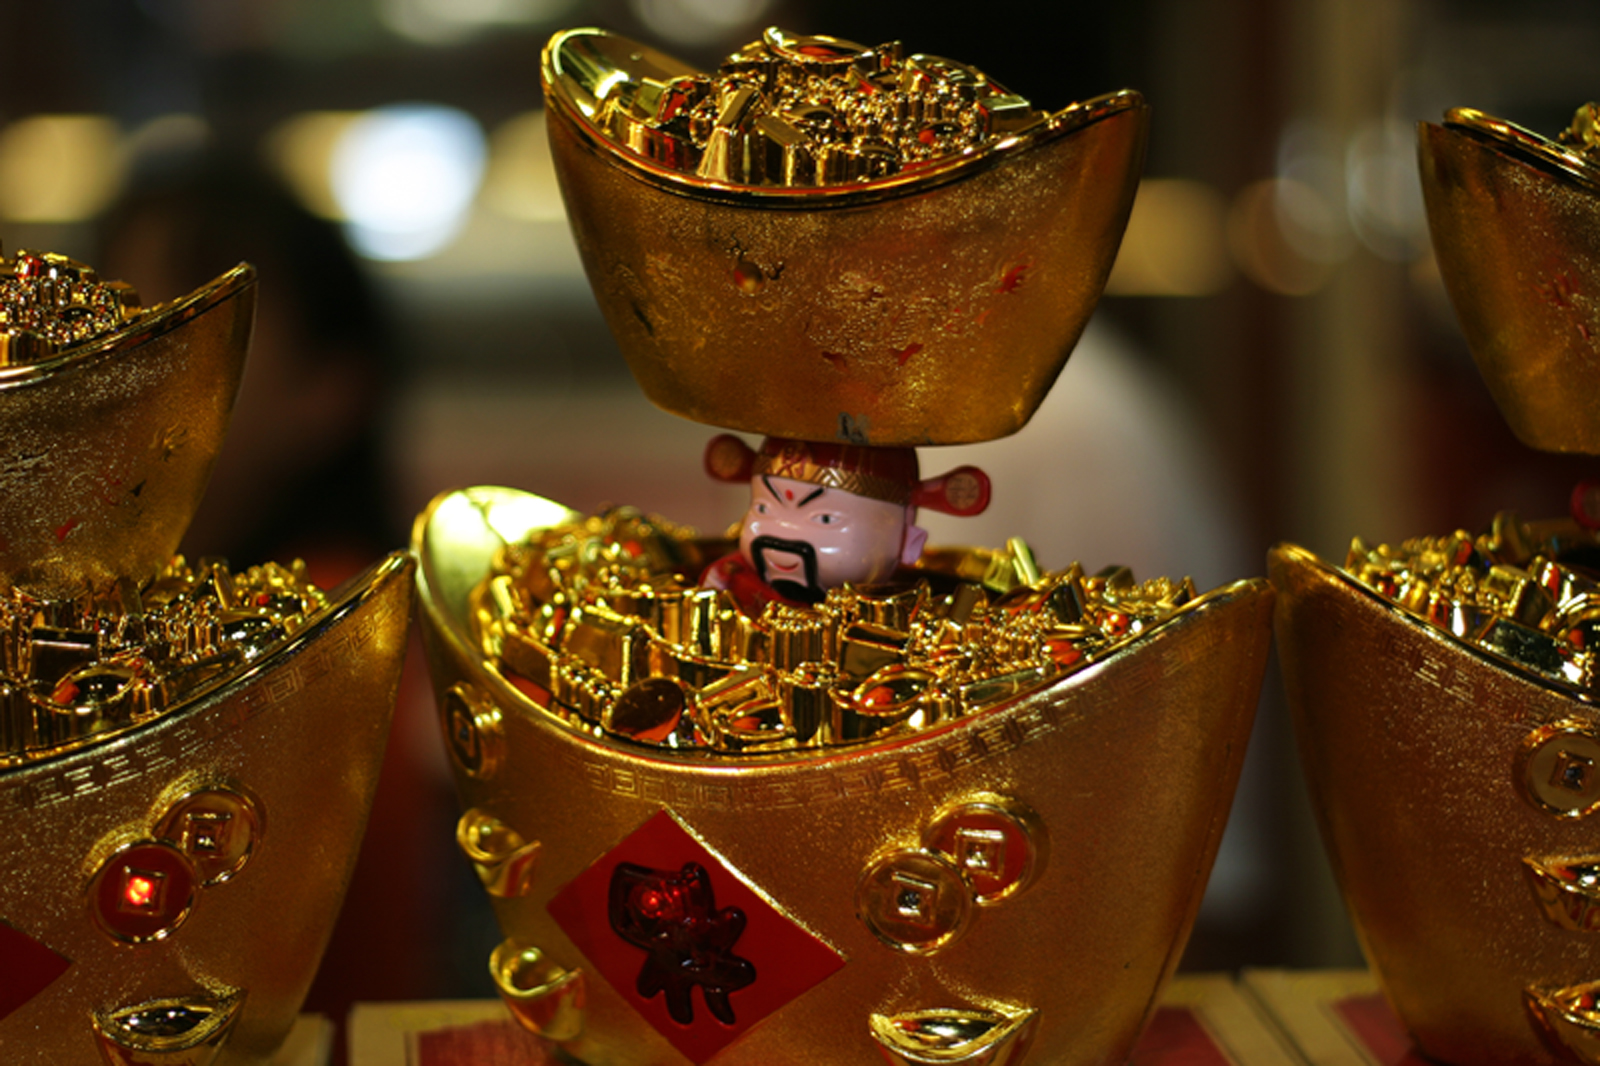 Décoration en forme de lingot d'or, censée d'apporter la bonne fortune pour la nouvelle année